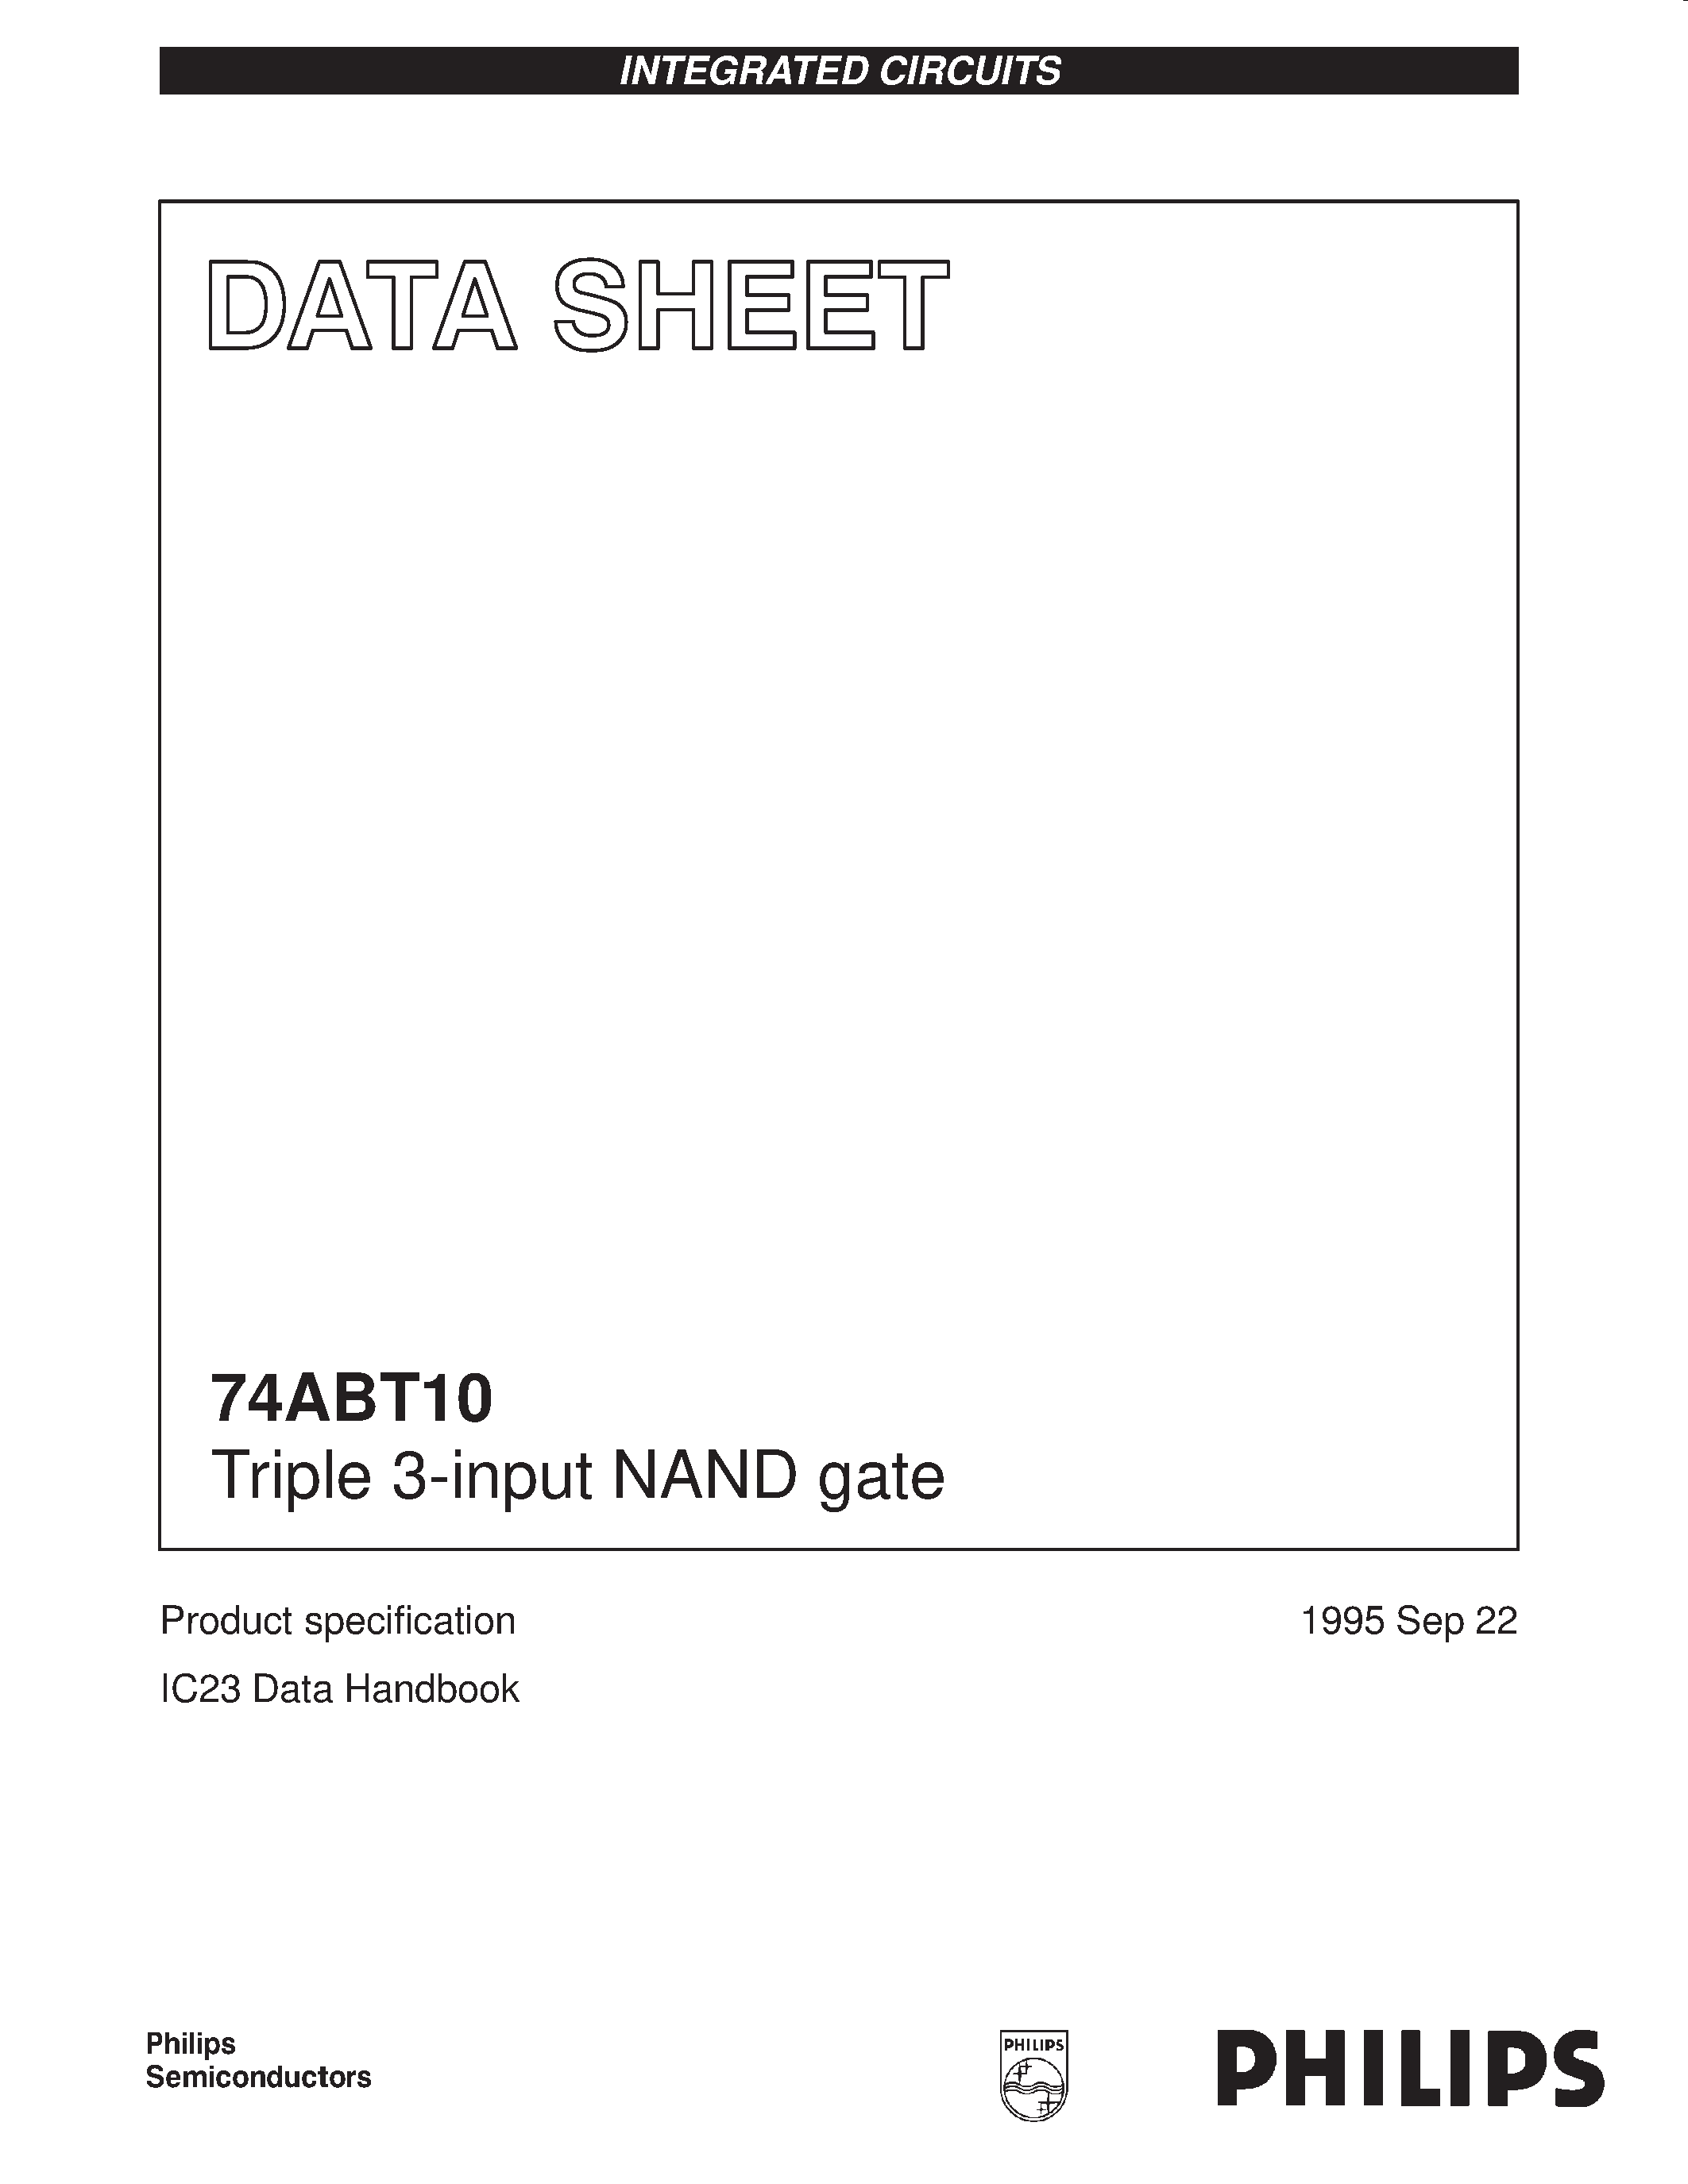 Даташит 74ABT10DB - Triple 3-input NAND gate страница 1